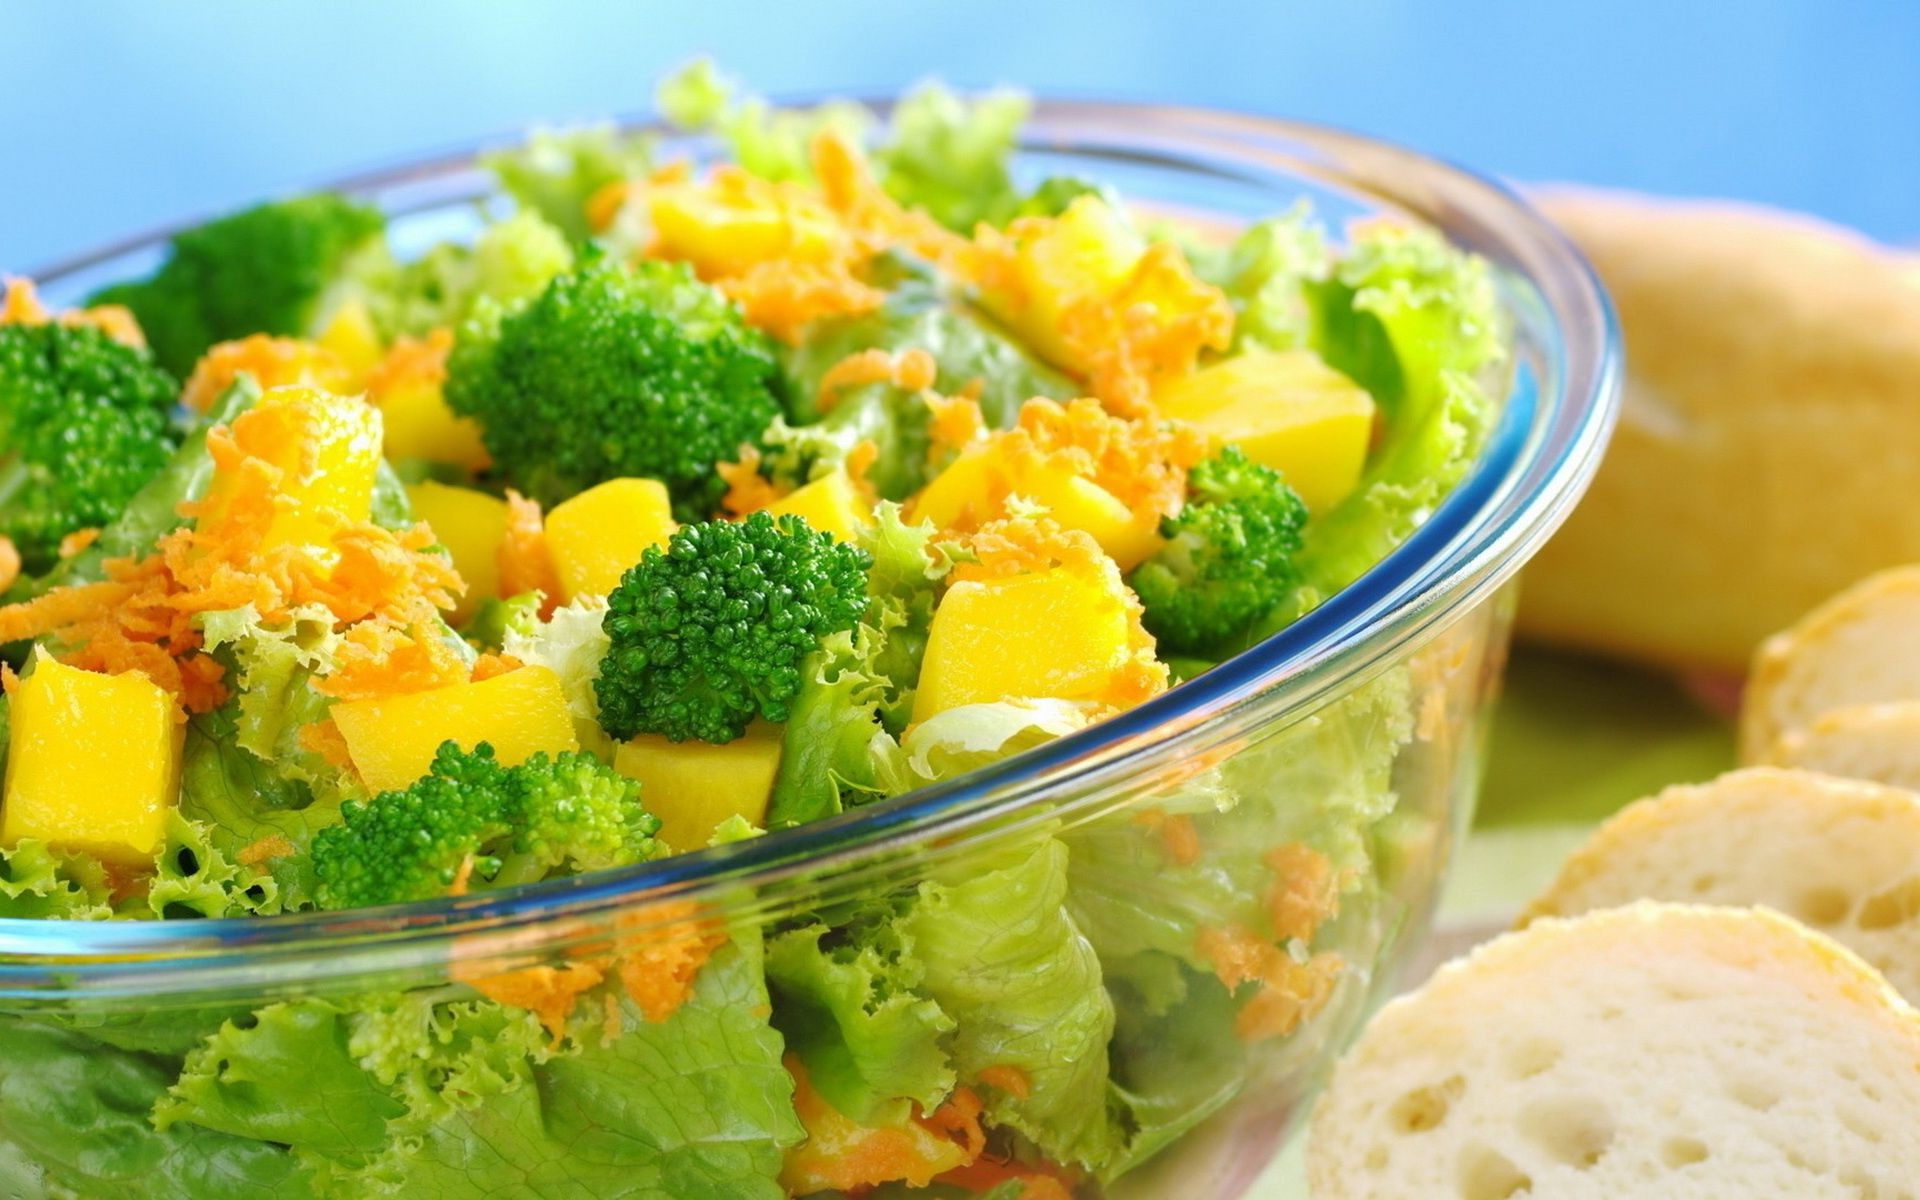 еда и напитки еда обед овощ здоровый ужин вкусные салат питание здоровья питание салат блюдо брокколи диета чаша закуска петрушка плиты кухни